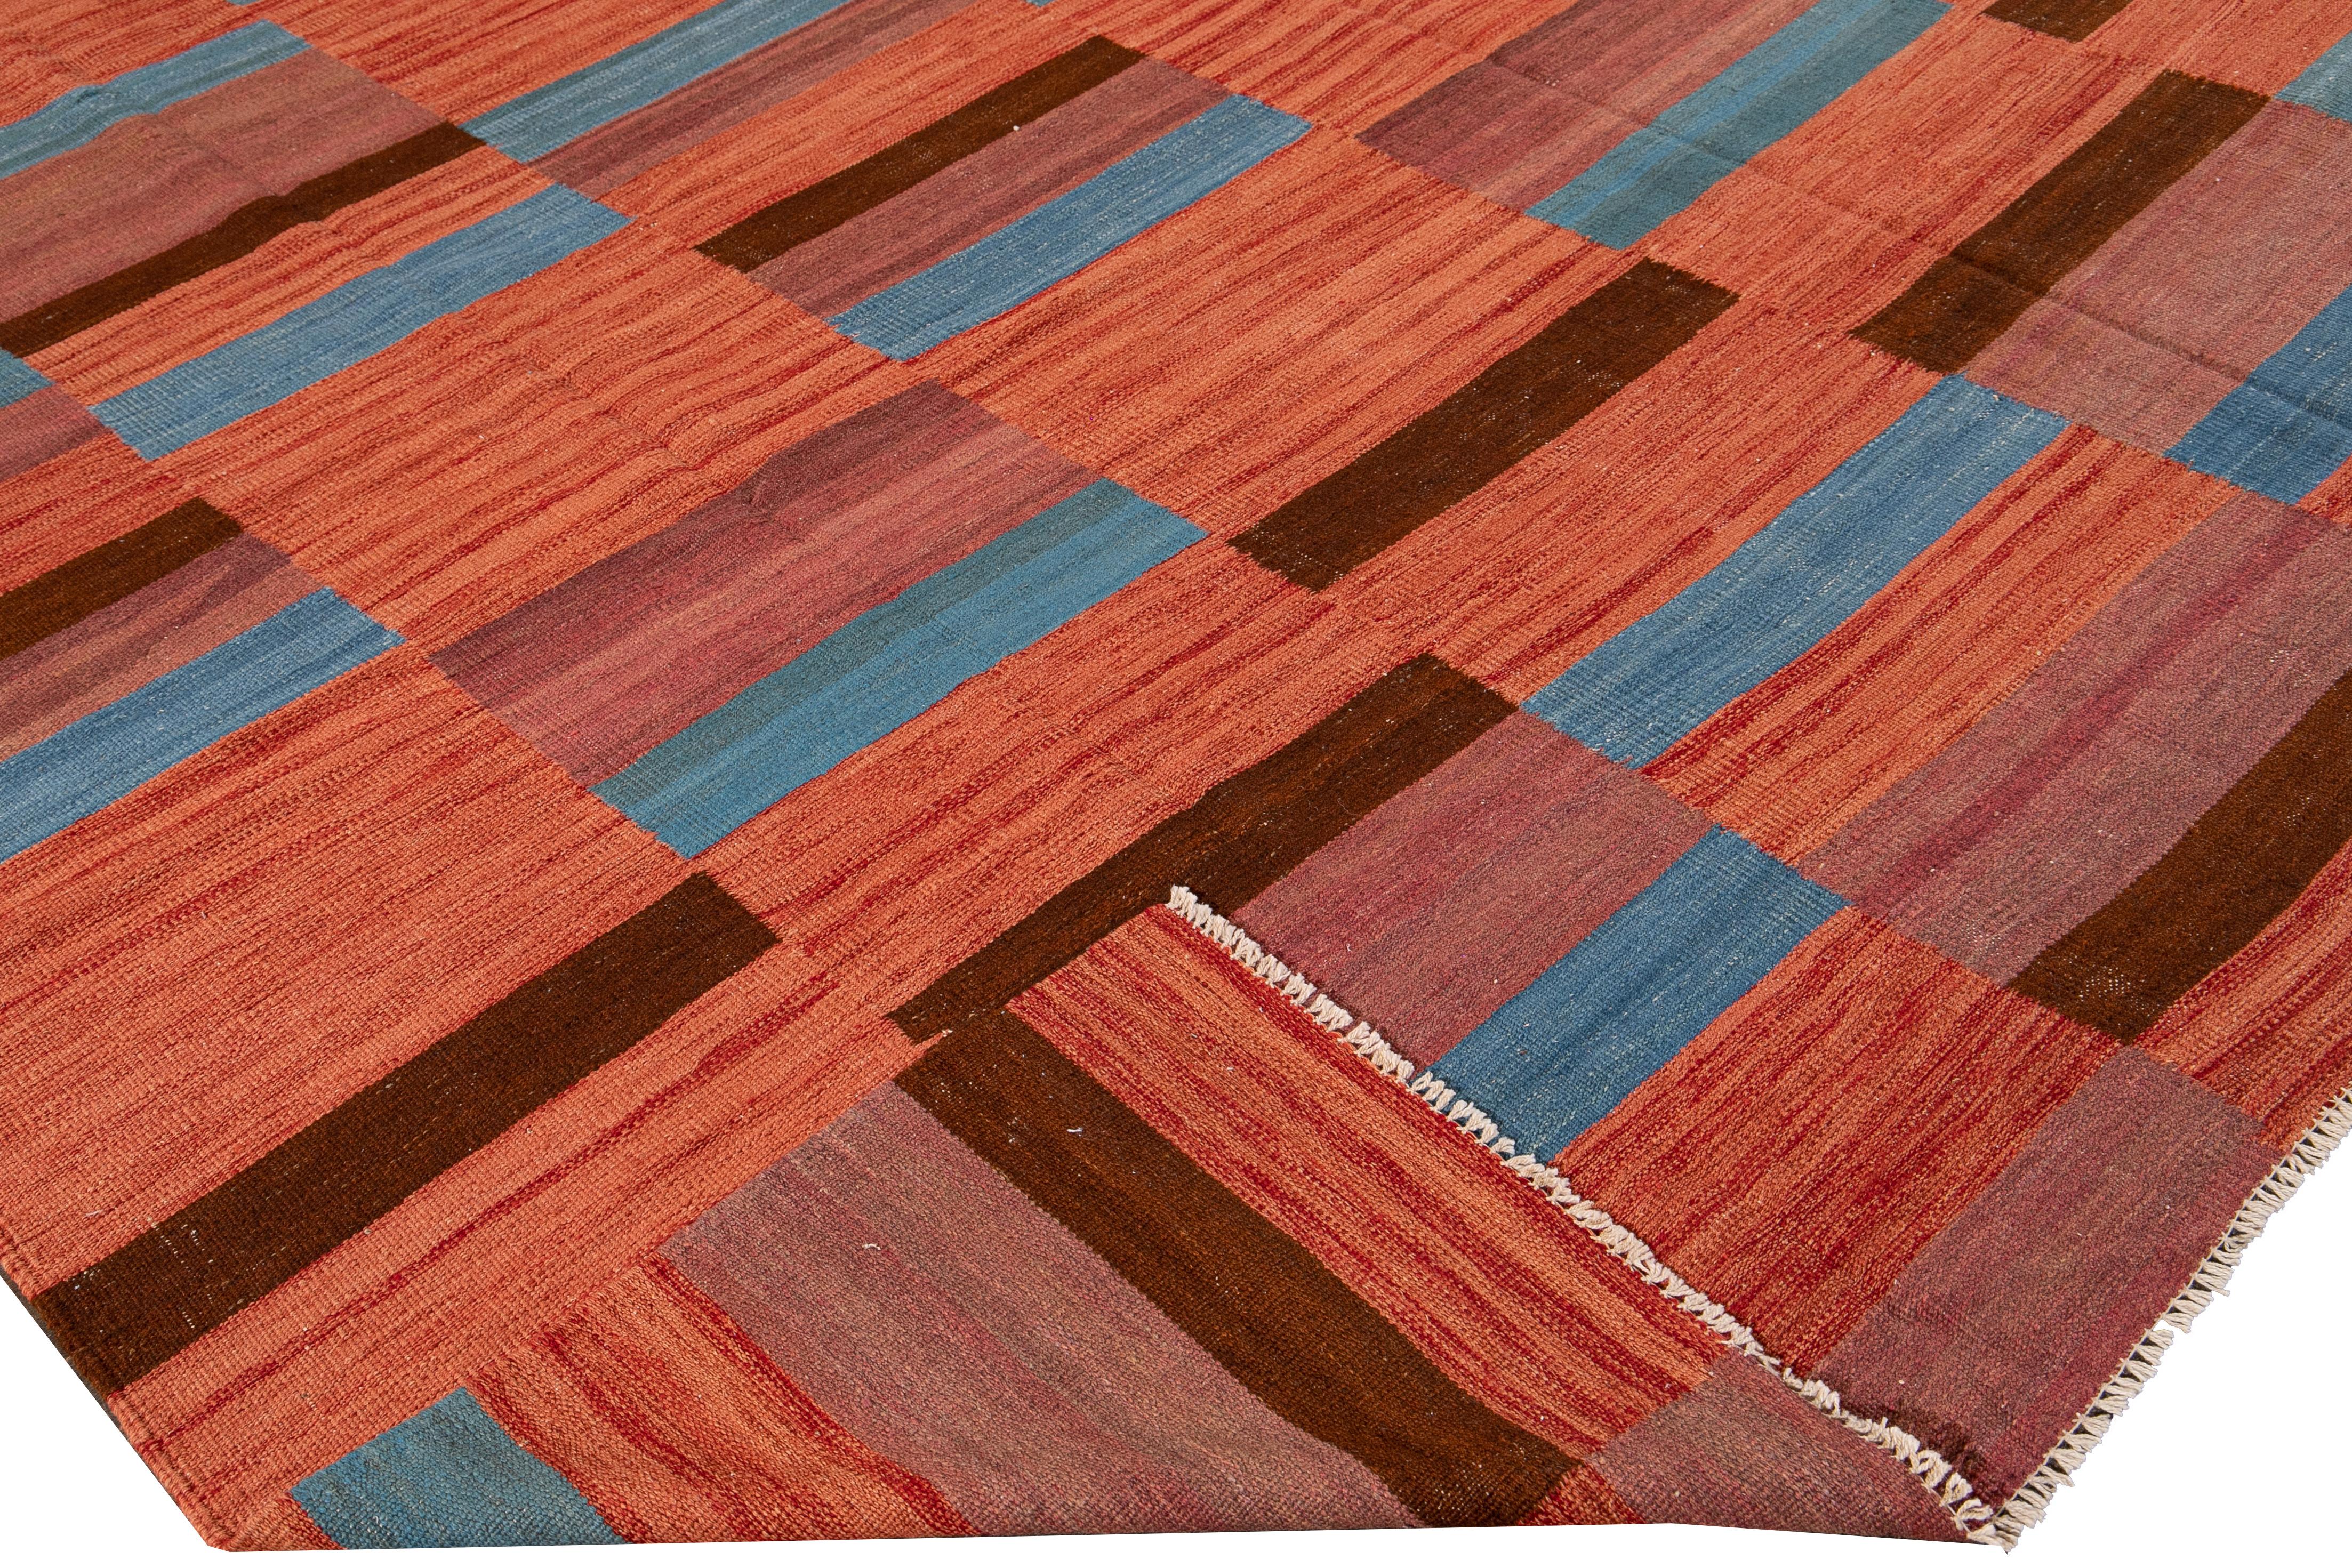 Schöner moderner flachgewebter Kilim-Wollteppich mit orangefarbenem Feld. Dieser Kelimteppich hat einen blauen und braunen Akzent in einem wunderschönen abstrakten geometrischen Muster.

Dieser Teppich misst: 8'3